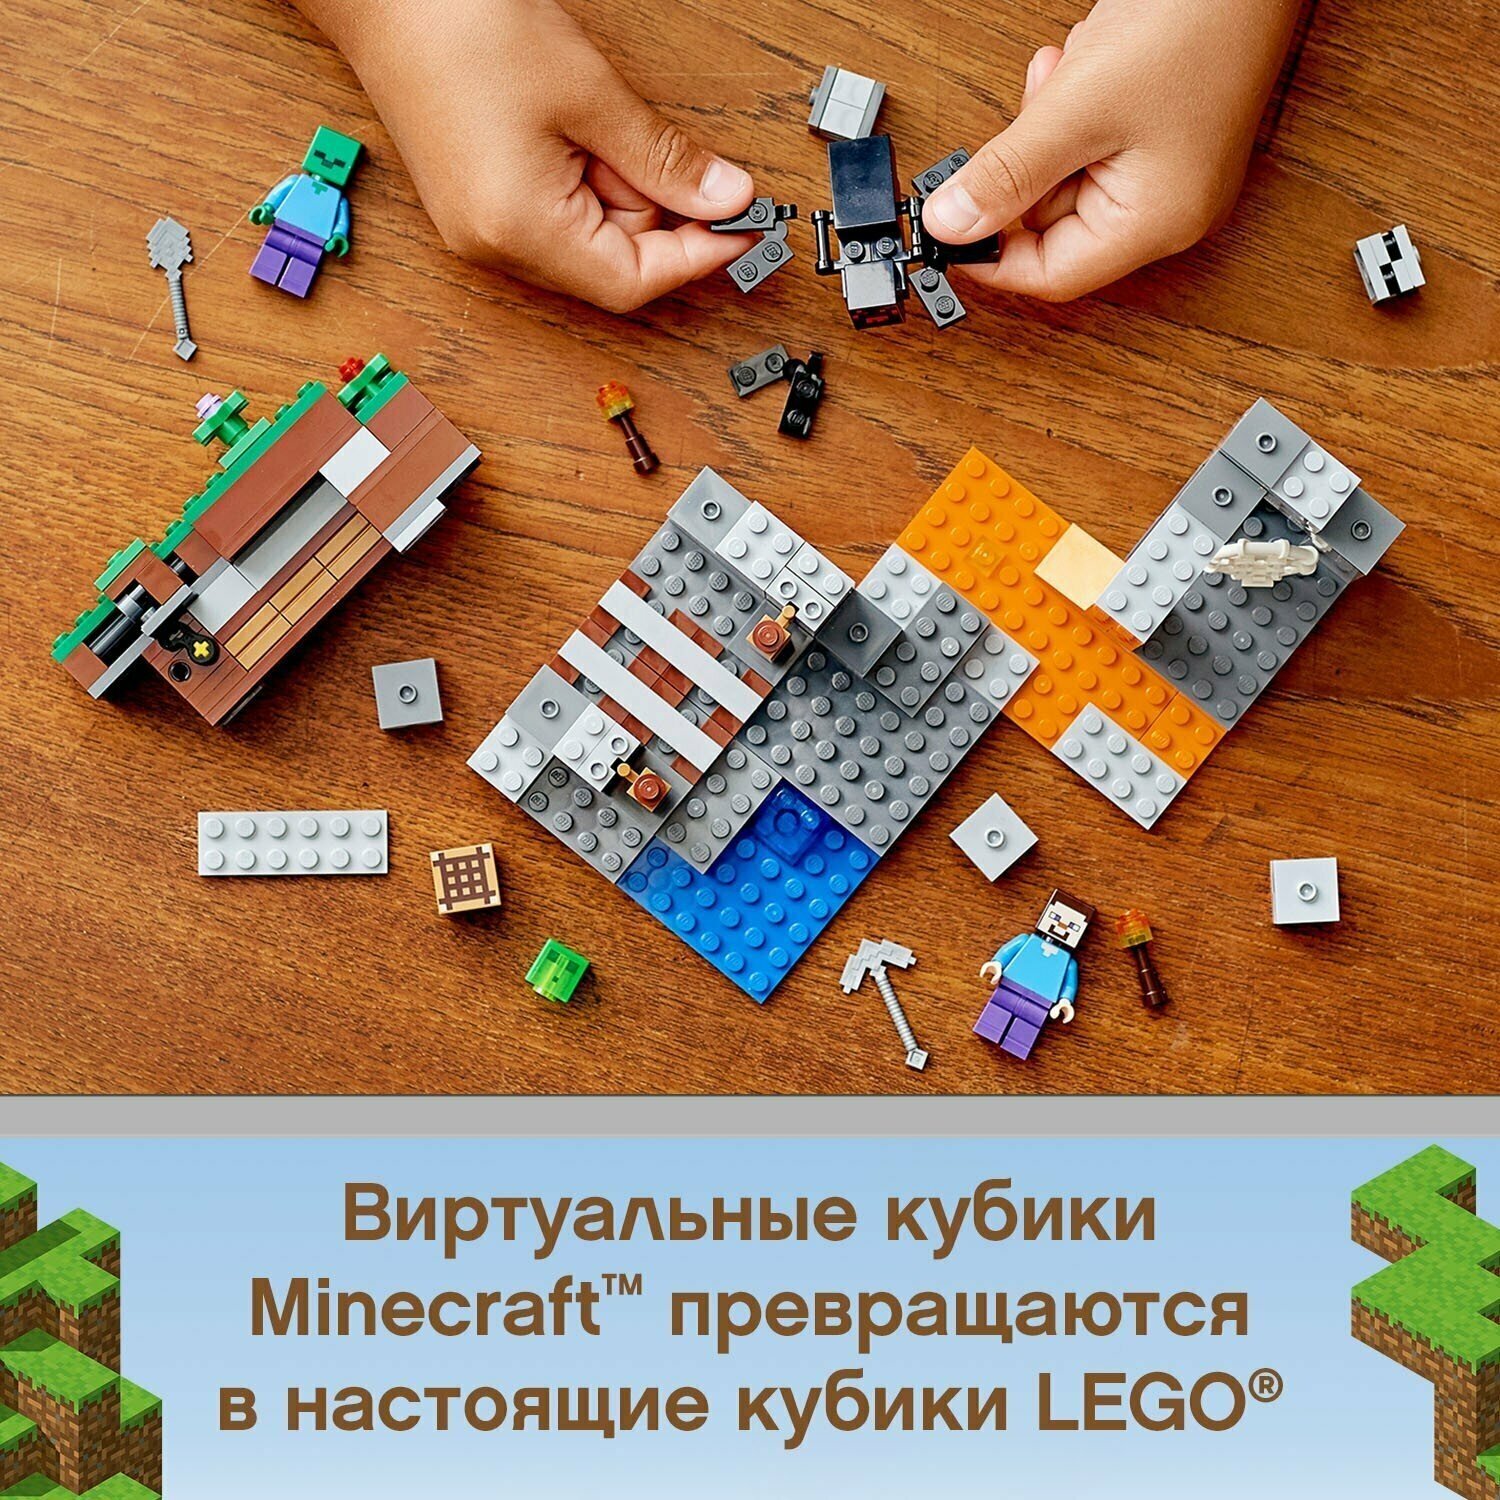 Конструктор Lego - фото №15